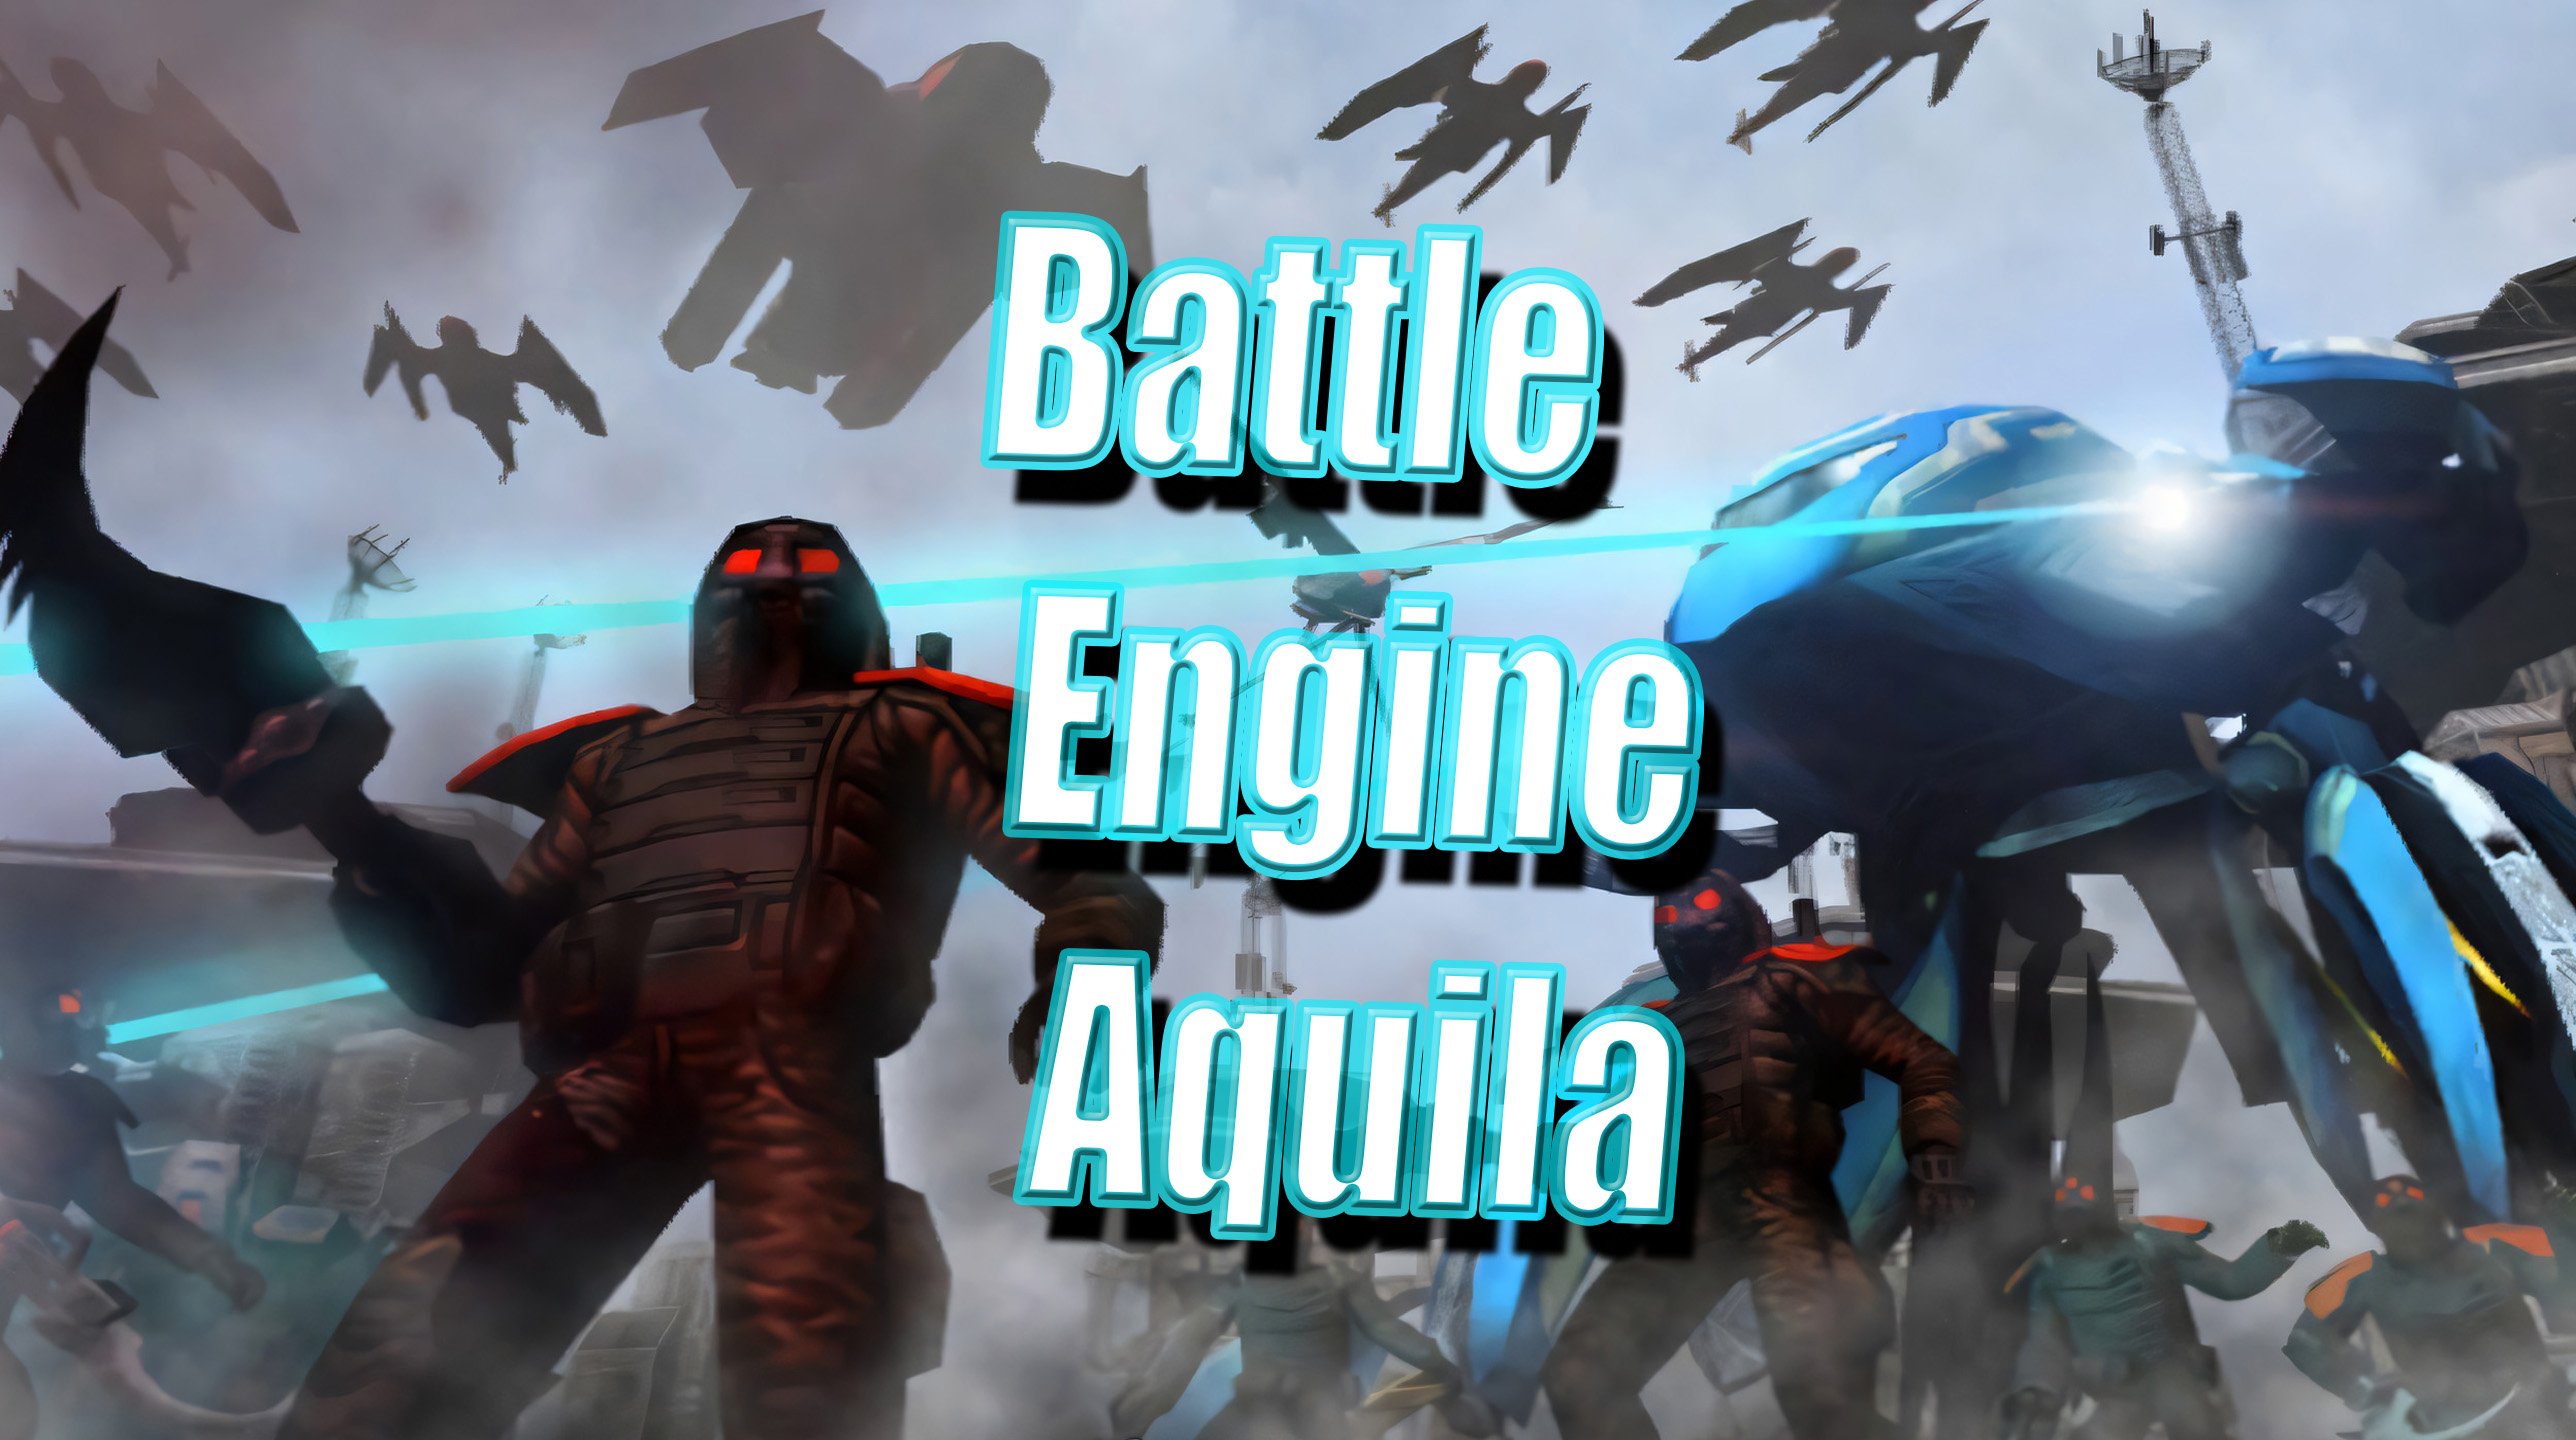 ПРОХОЖДЕНИЕ - Battle engine Aquila - #2 _ Контрнаступление